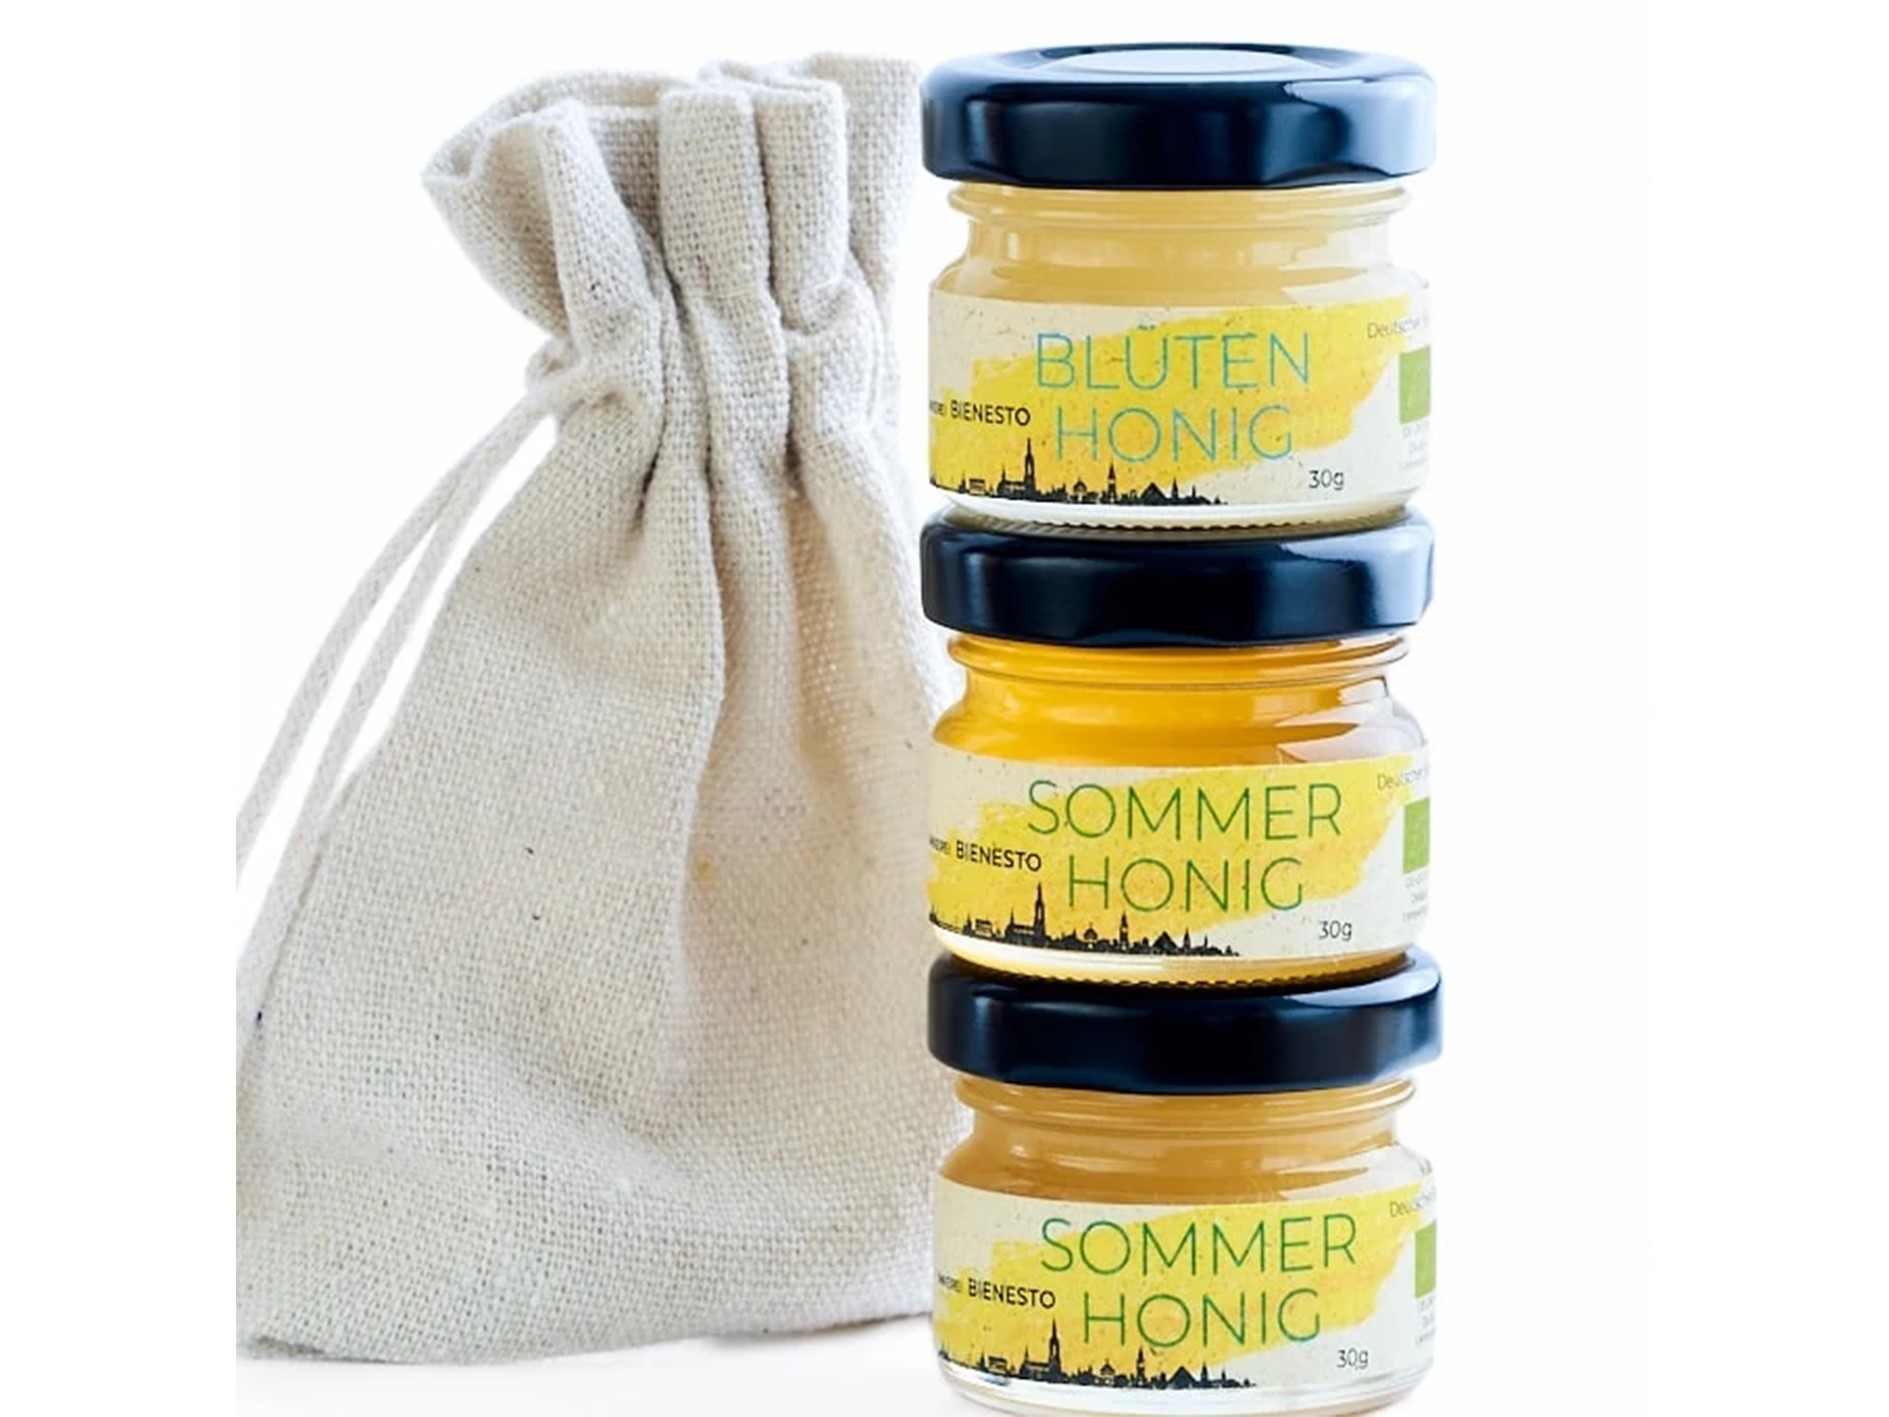 Honig Geschenkset: 3 Minigläser Honig im Leinentäschchen | 3 x 50g